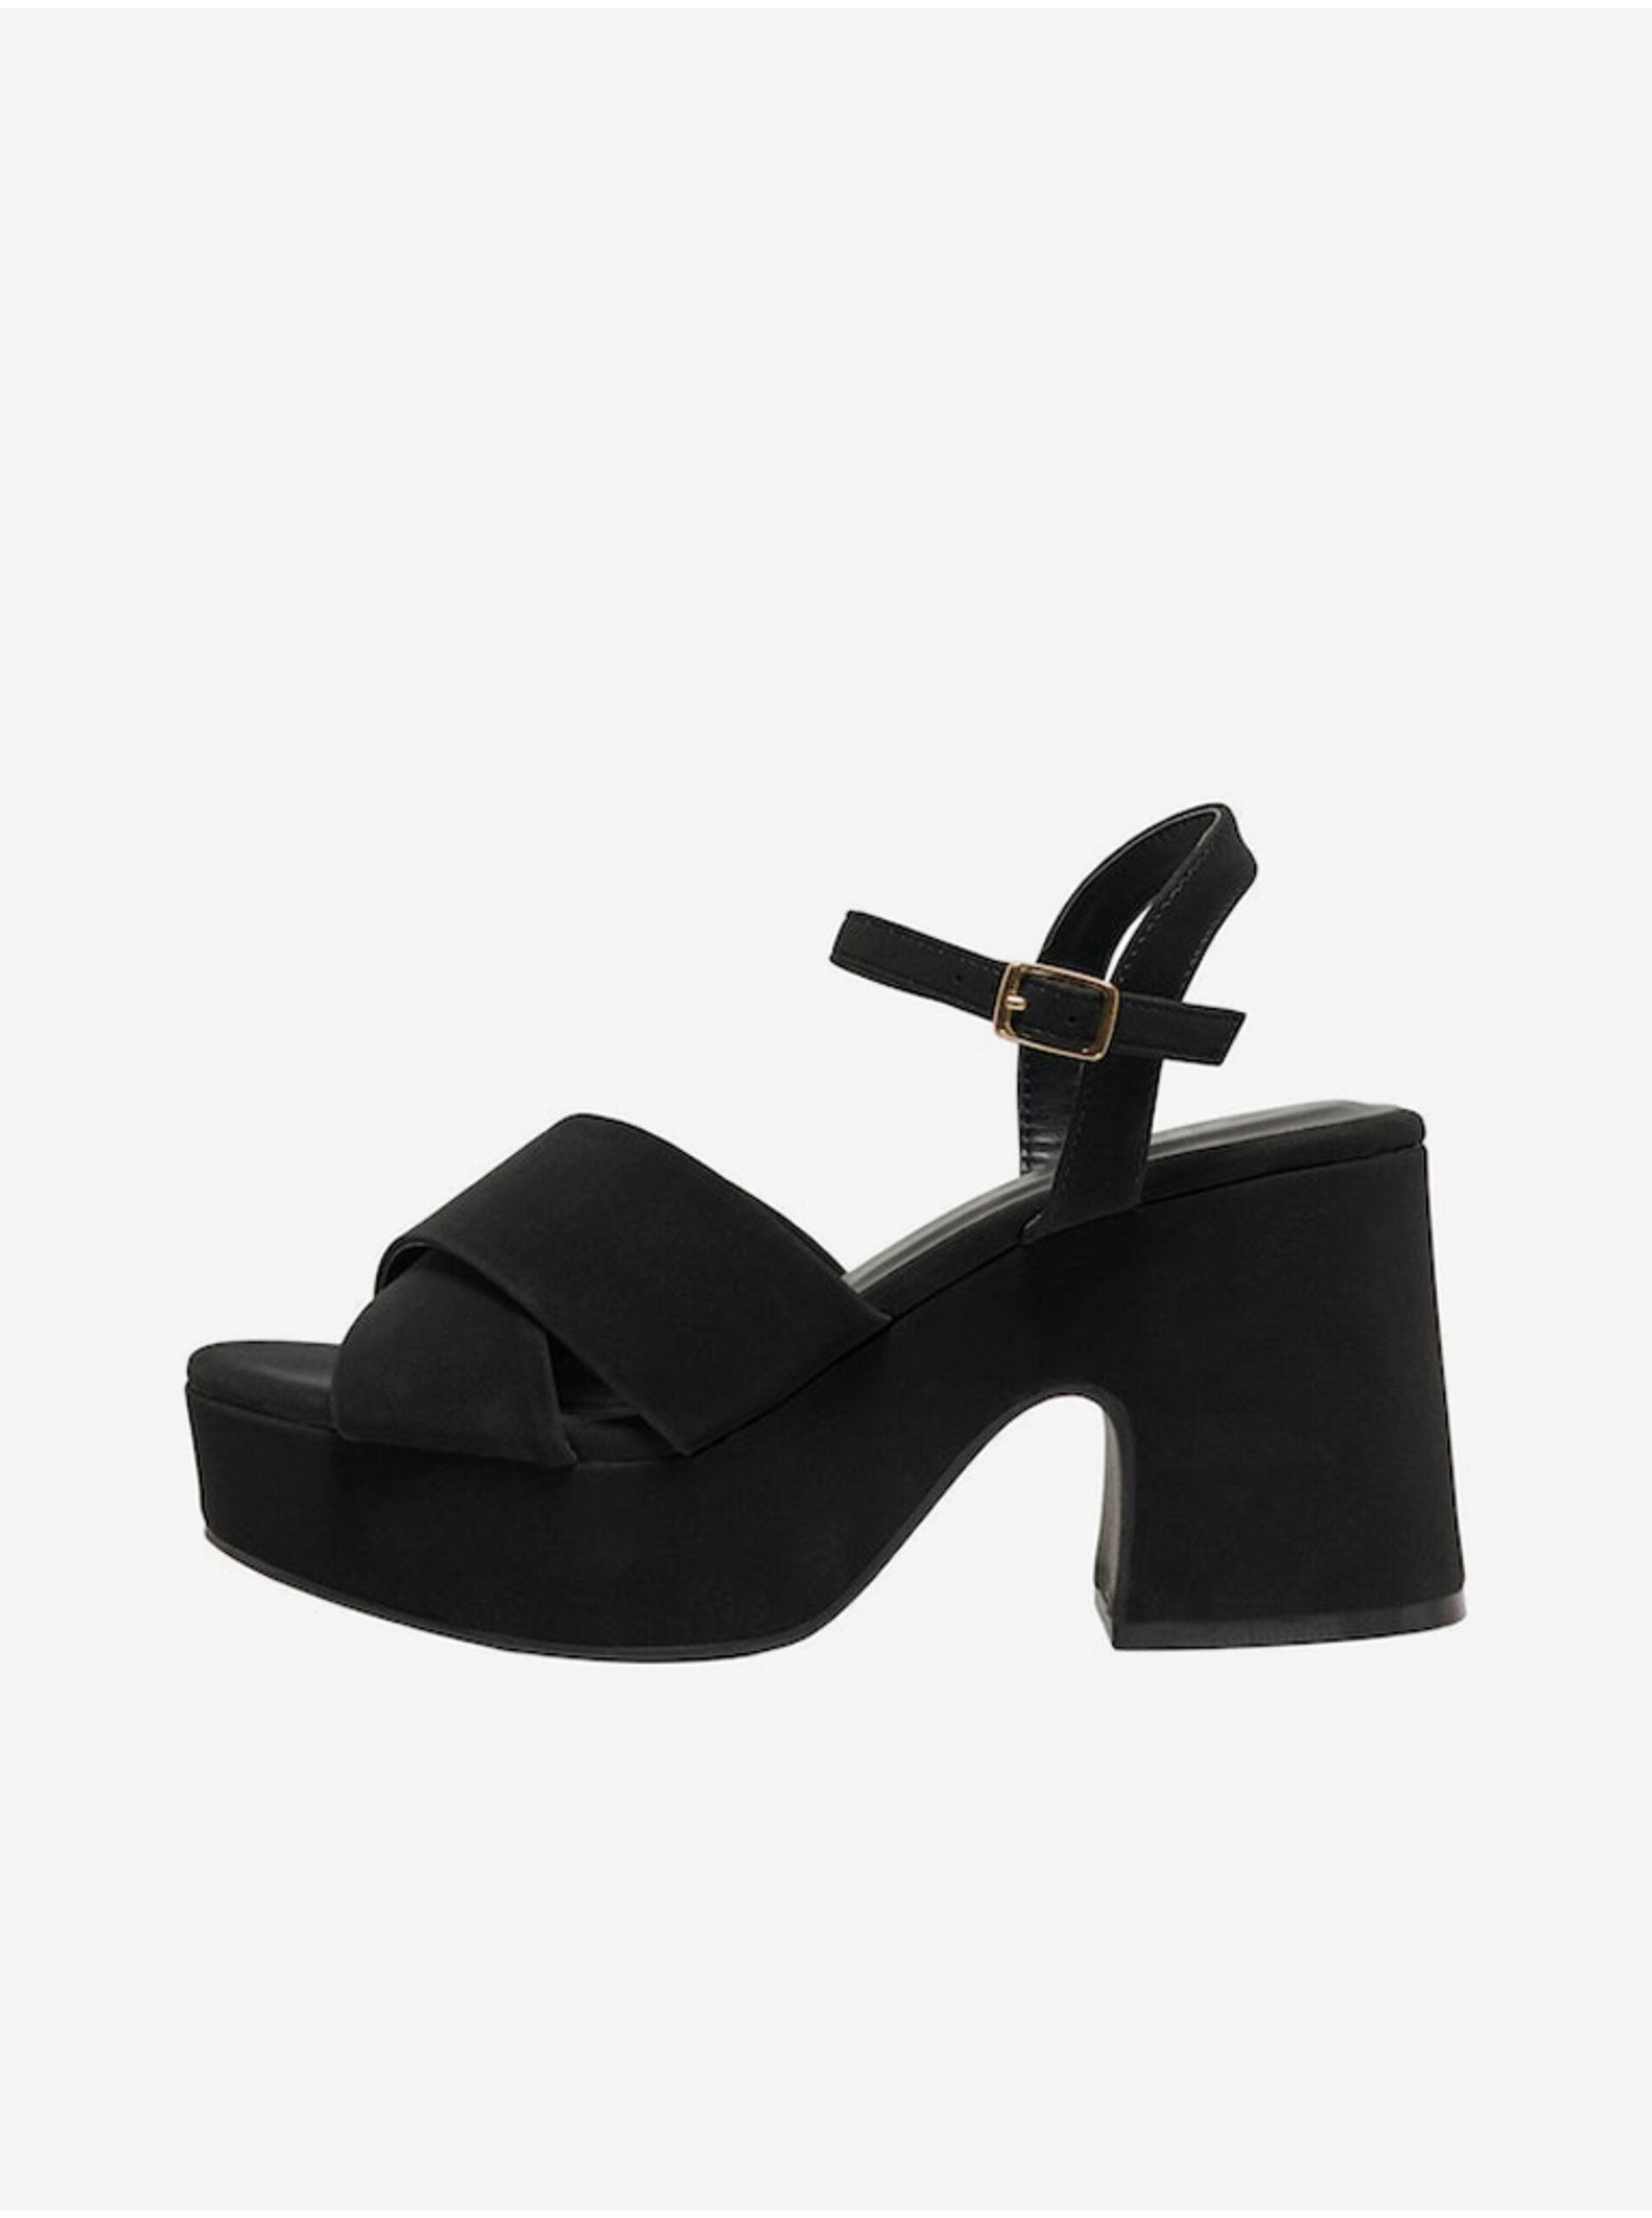 E-shop Čierne dámske sandále na podpätku v semišovej úprave ONLY Alba-1